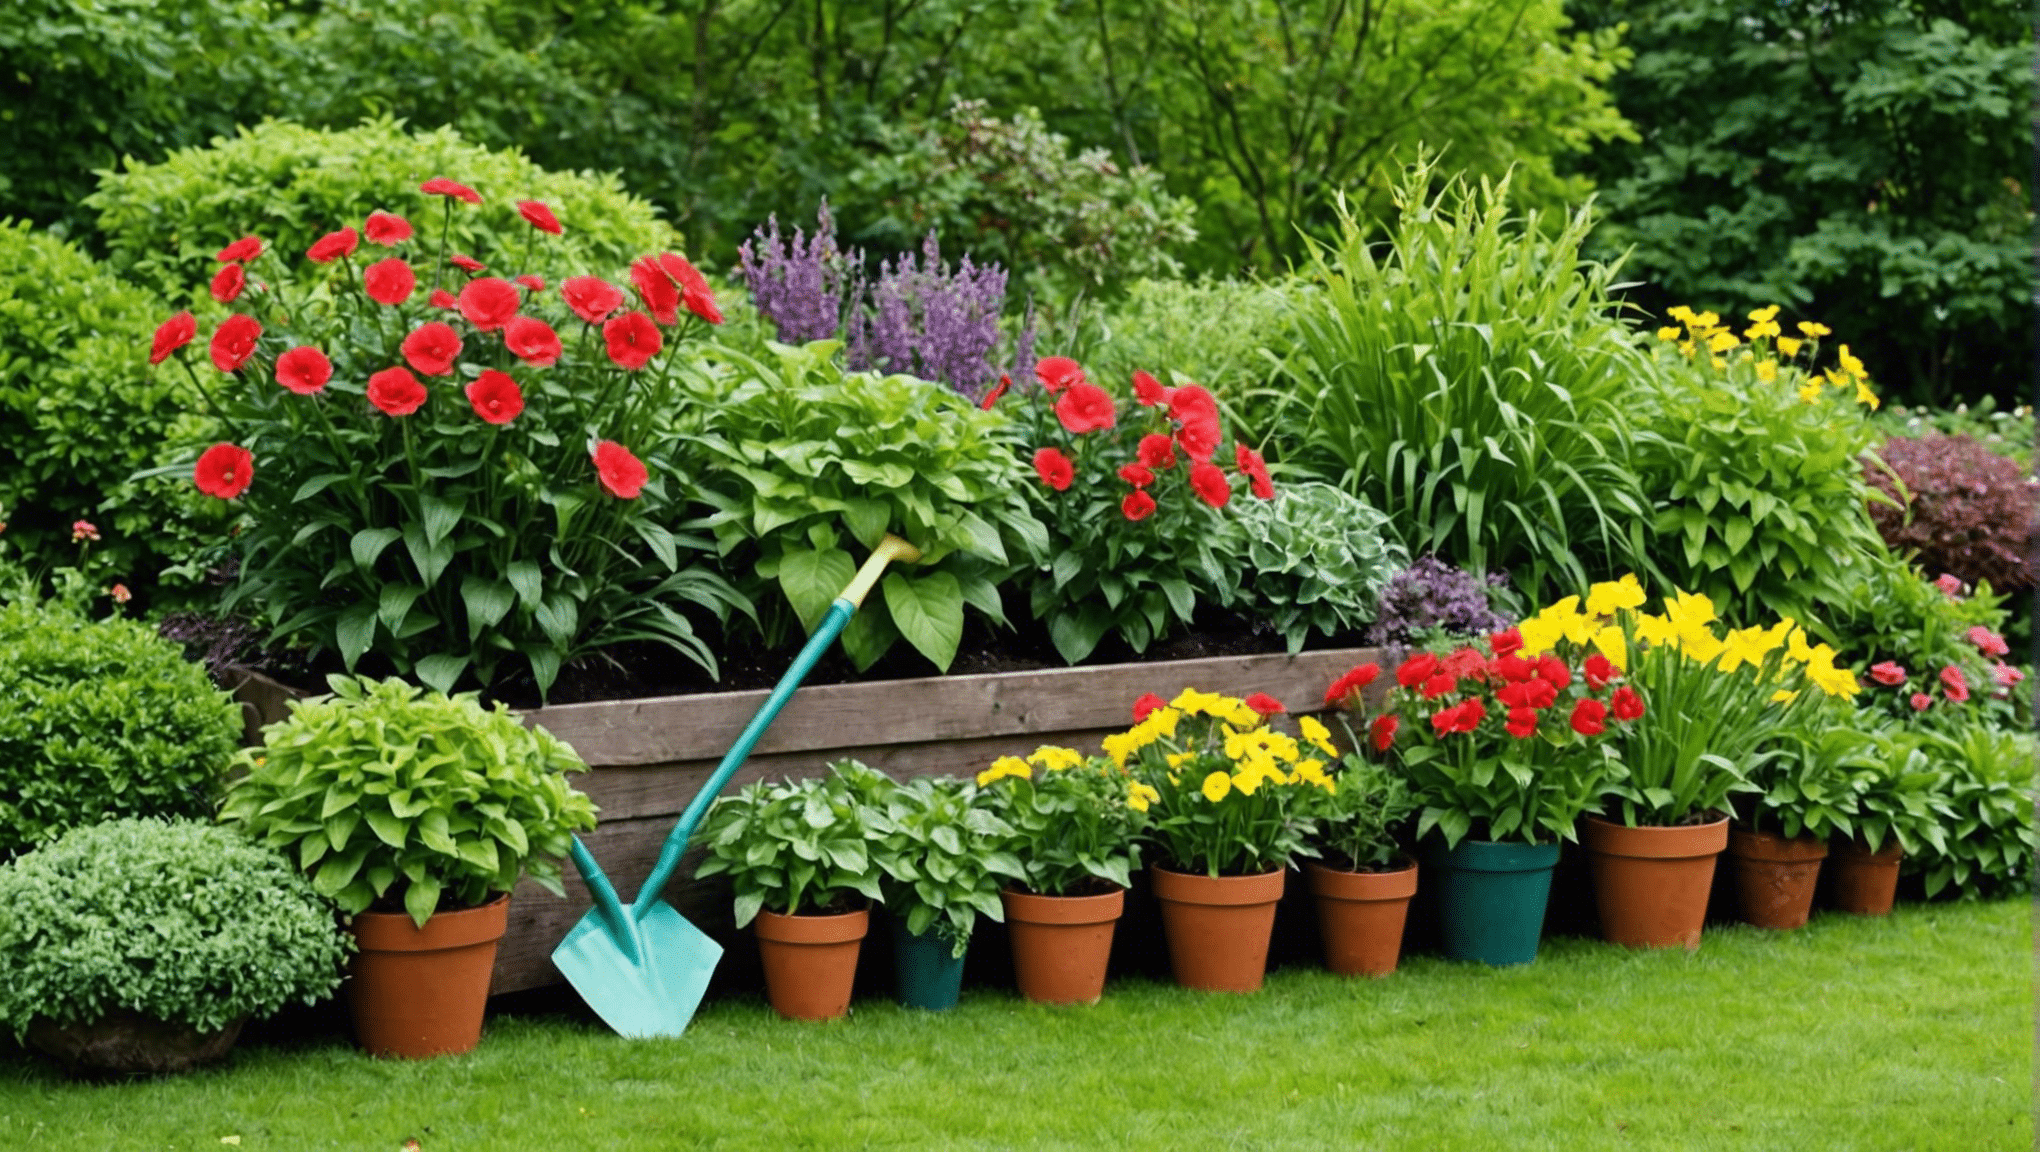 encuentre inspiración y excelentes ideas para regalos de jardinería con nuestra seleccionada colección de productos perfectos para cualquier entusiasta de la jardinería.